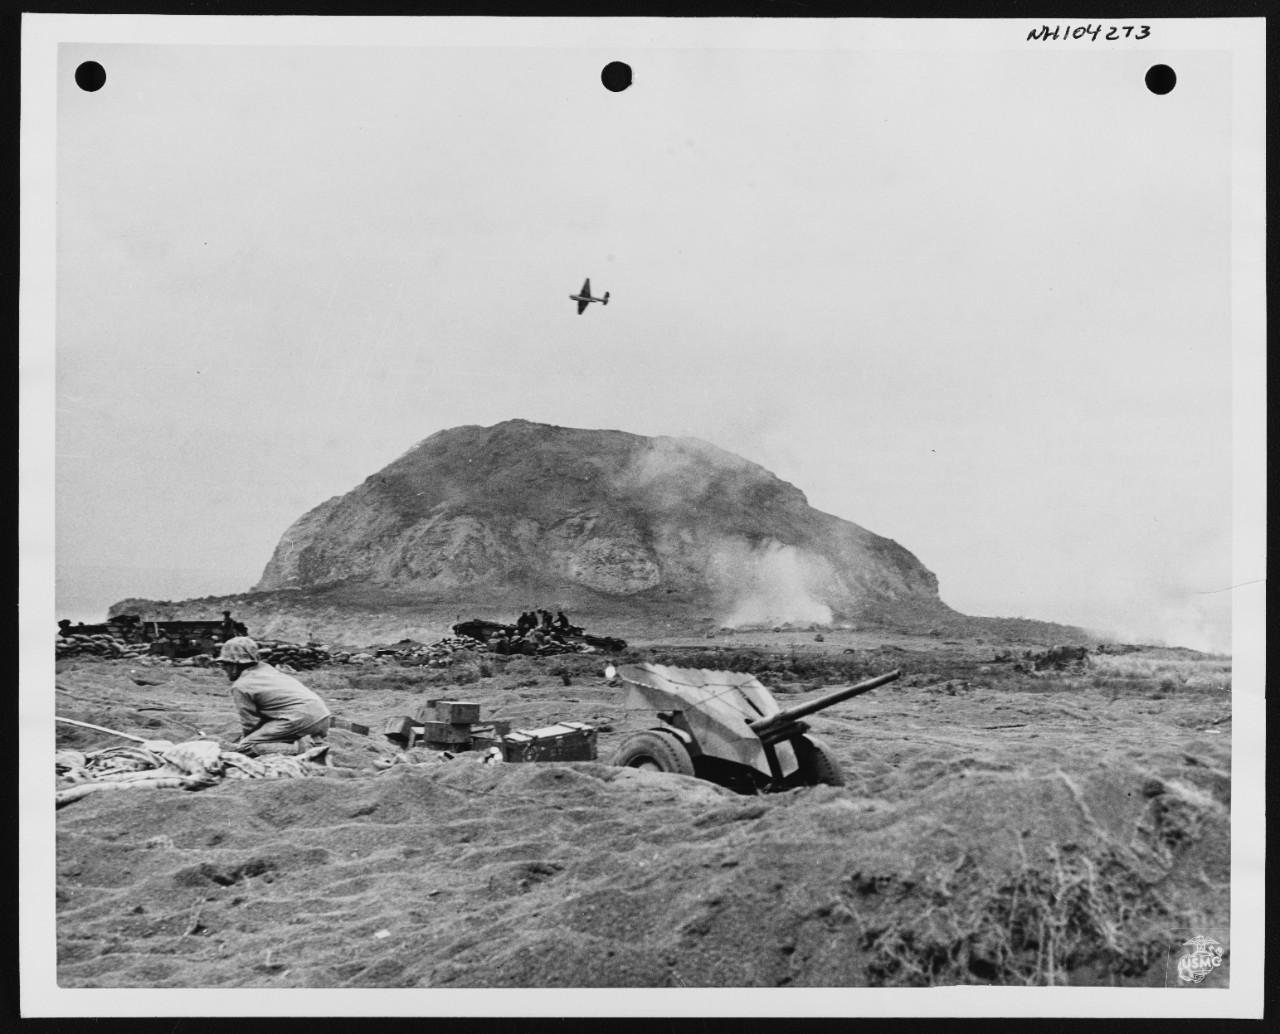 Photo #: NH 104273  Iwo Jima Operation, 1945